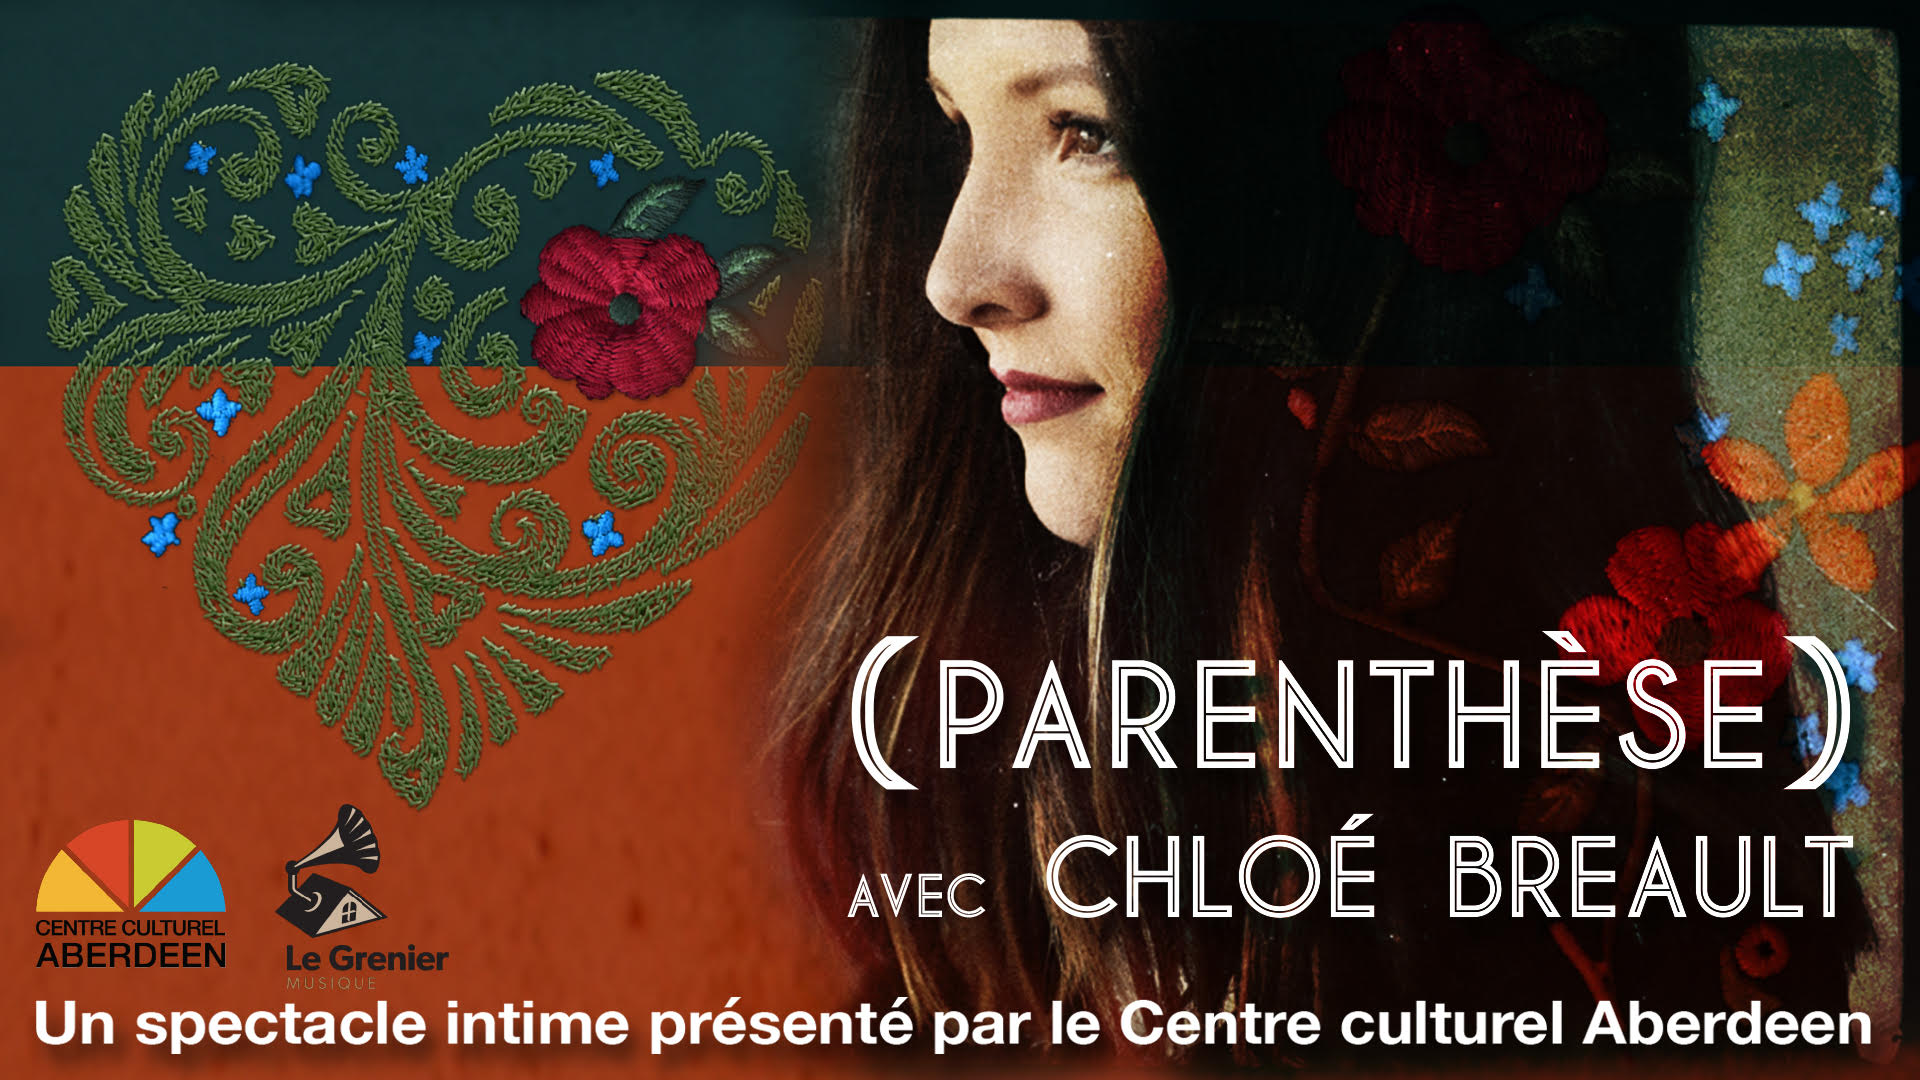 Chloé Breault inaugurera la nouvelle série de spectacles du Centre culturel Aberdeen